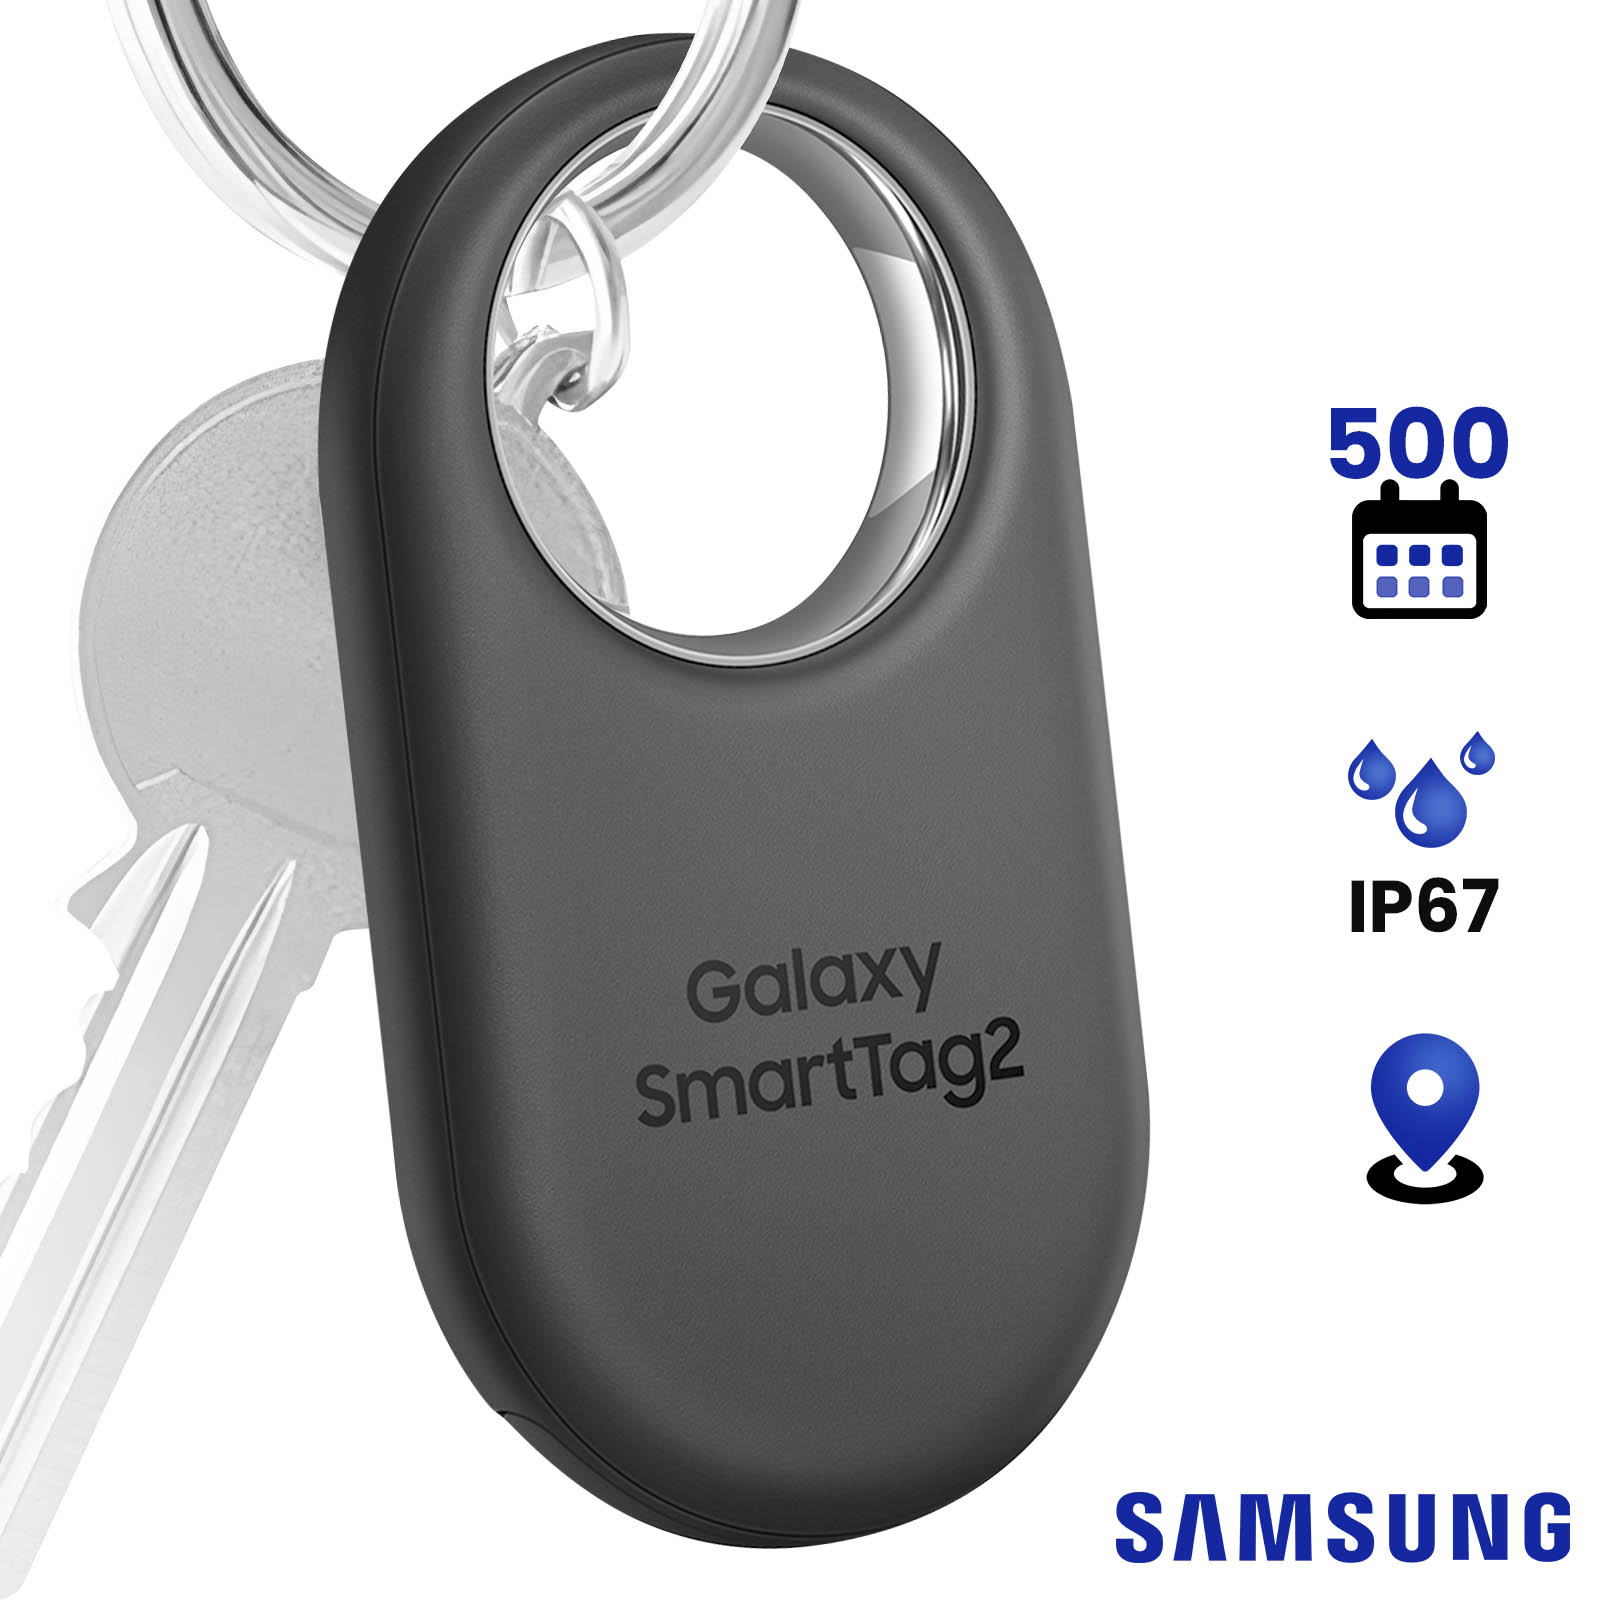 Samsung Galaxy SmartTags 2 : de nouveaux trackers pour ne plus